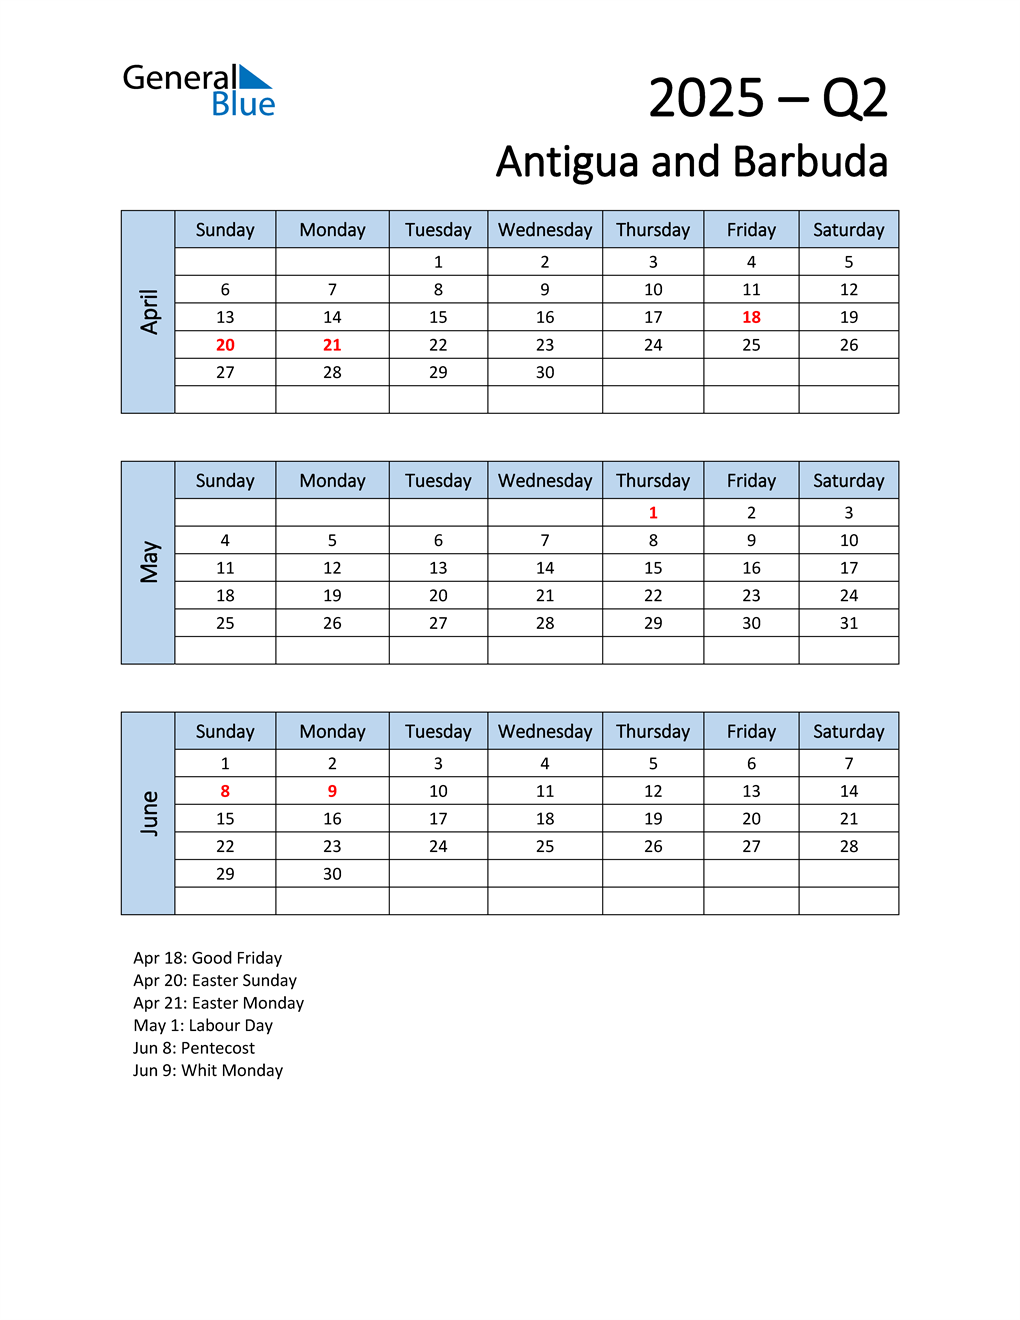  Free Q2 2025 Calendar for Antigua and Barbuda